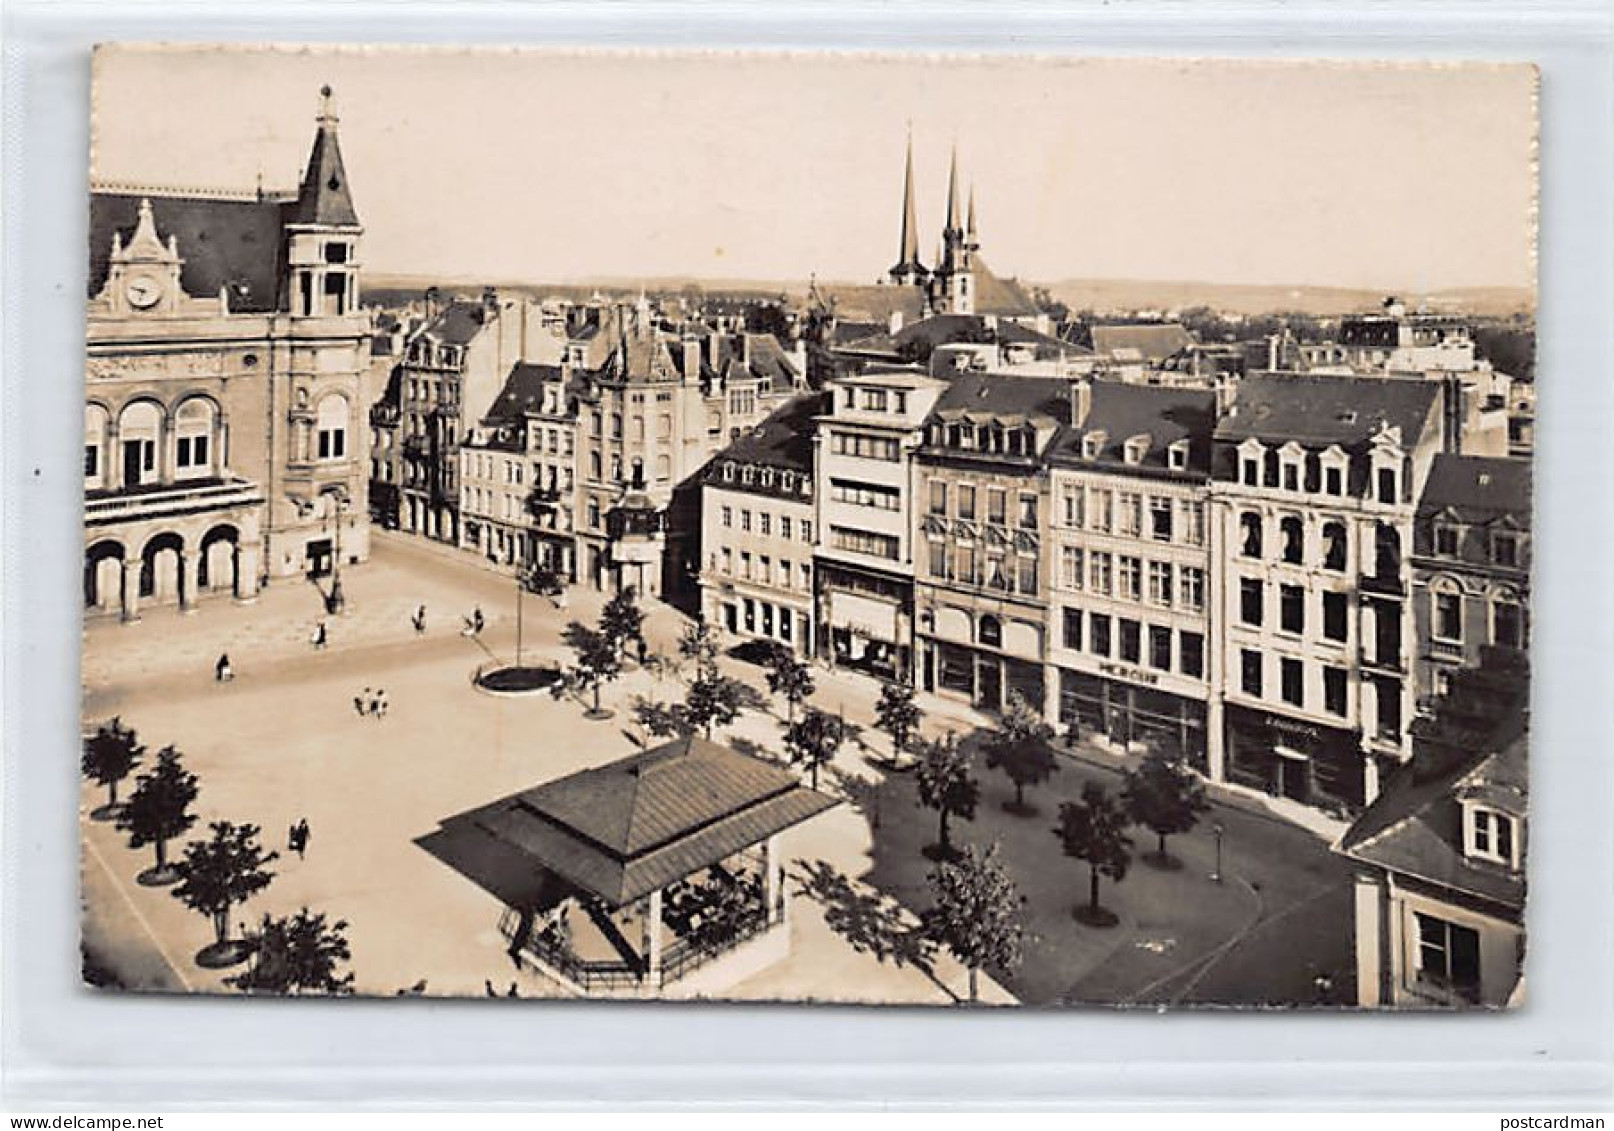 LUXEMBOURG-VILLE - Place D'Armes Et Vue Sur La Ville - Ed. Paul Kraus 16 - Luxemburg - Town